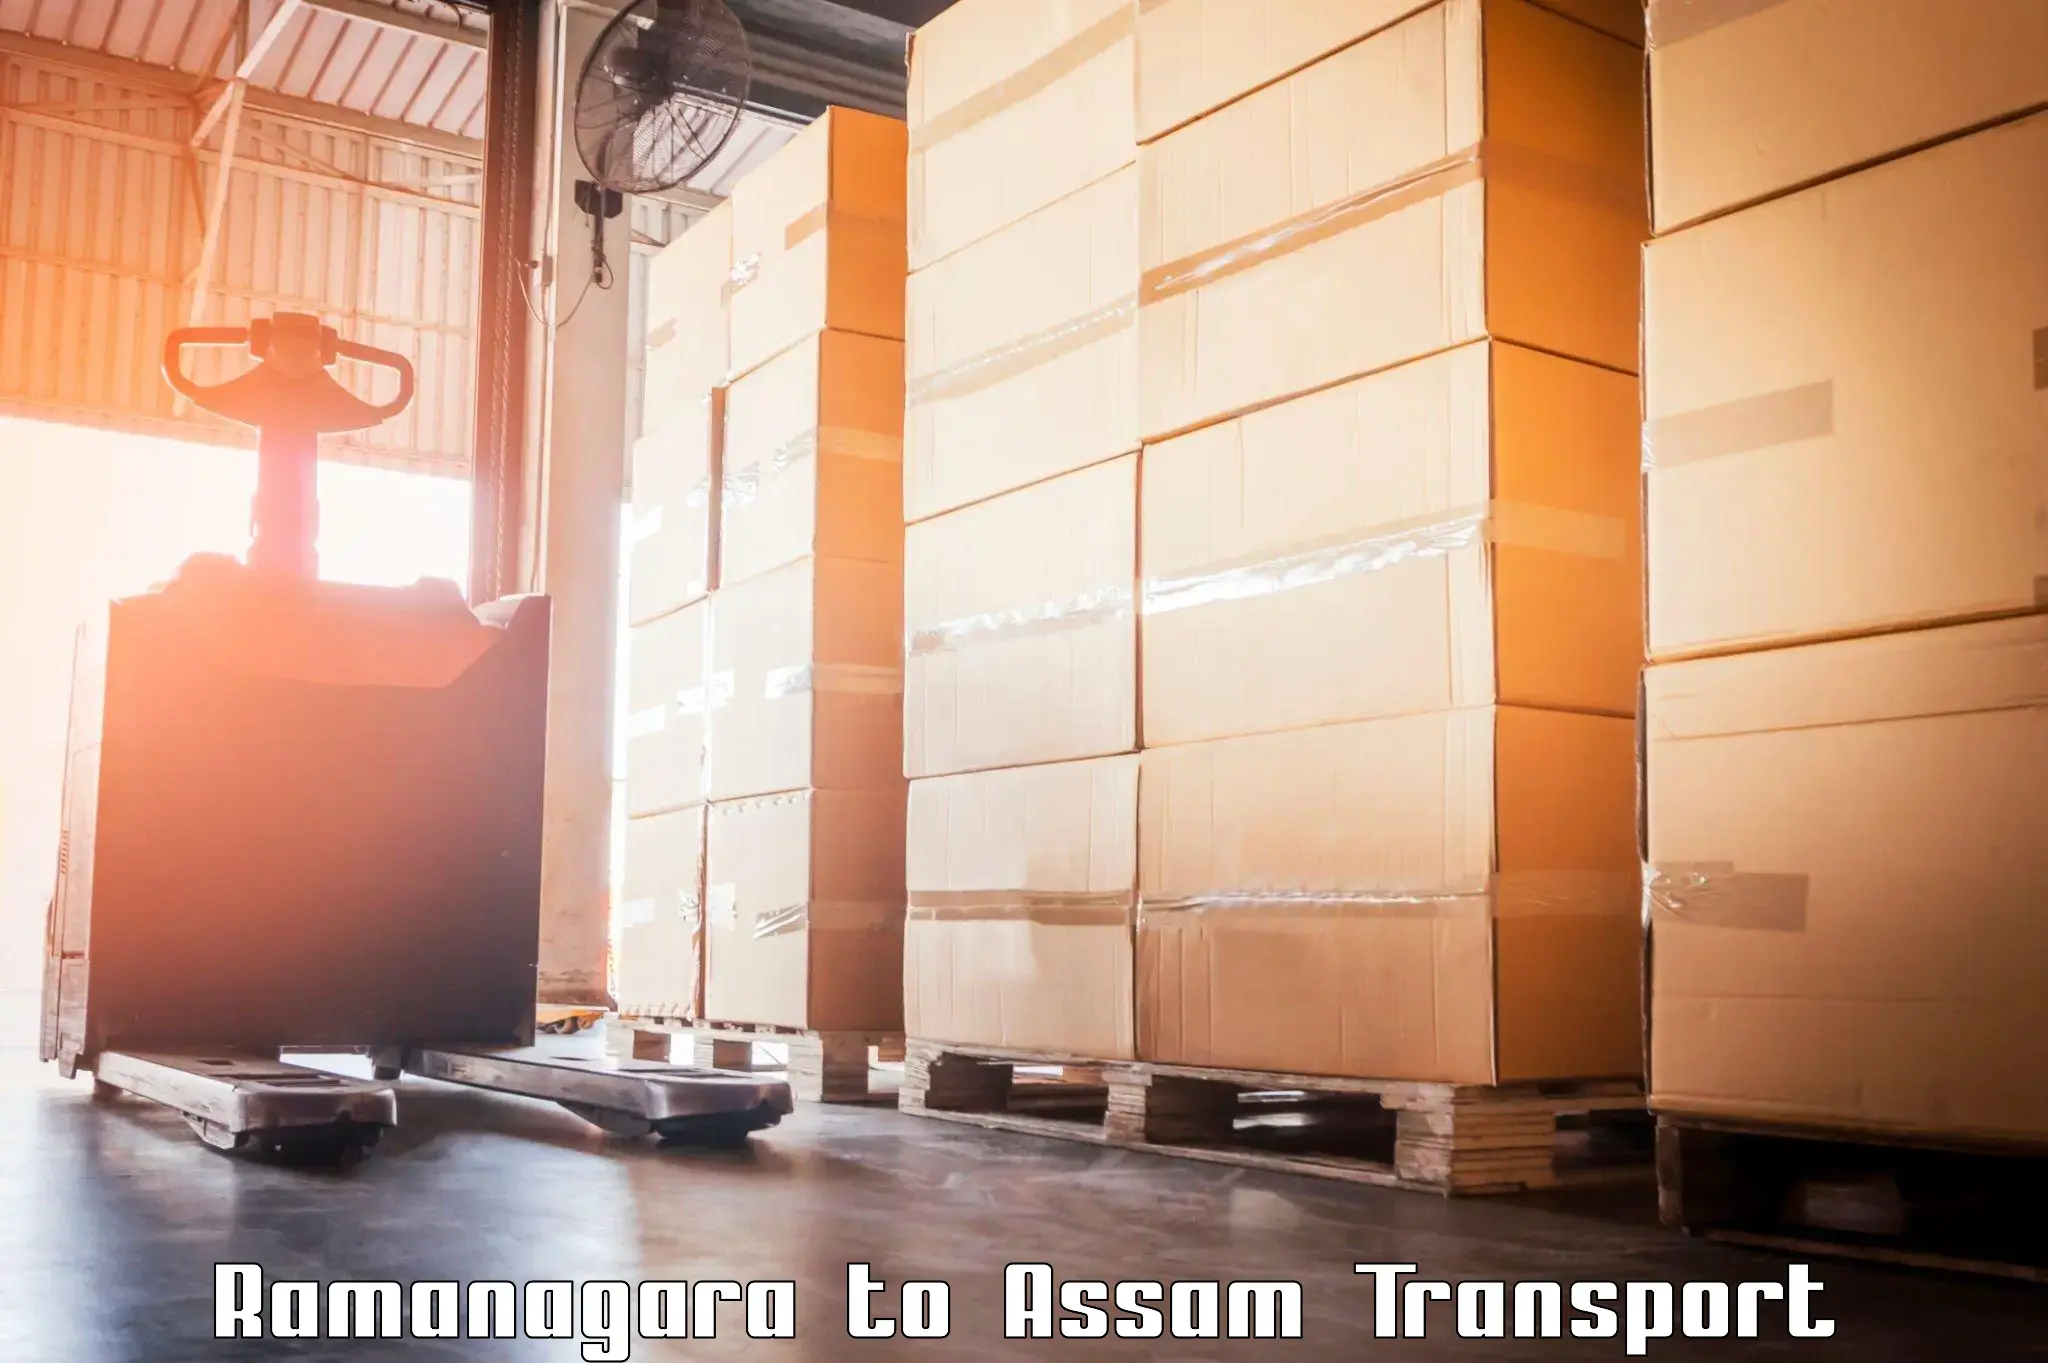 Interstate goods transport Ramanagara to Bamunimaidan